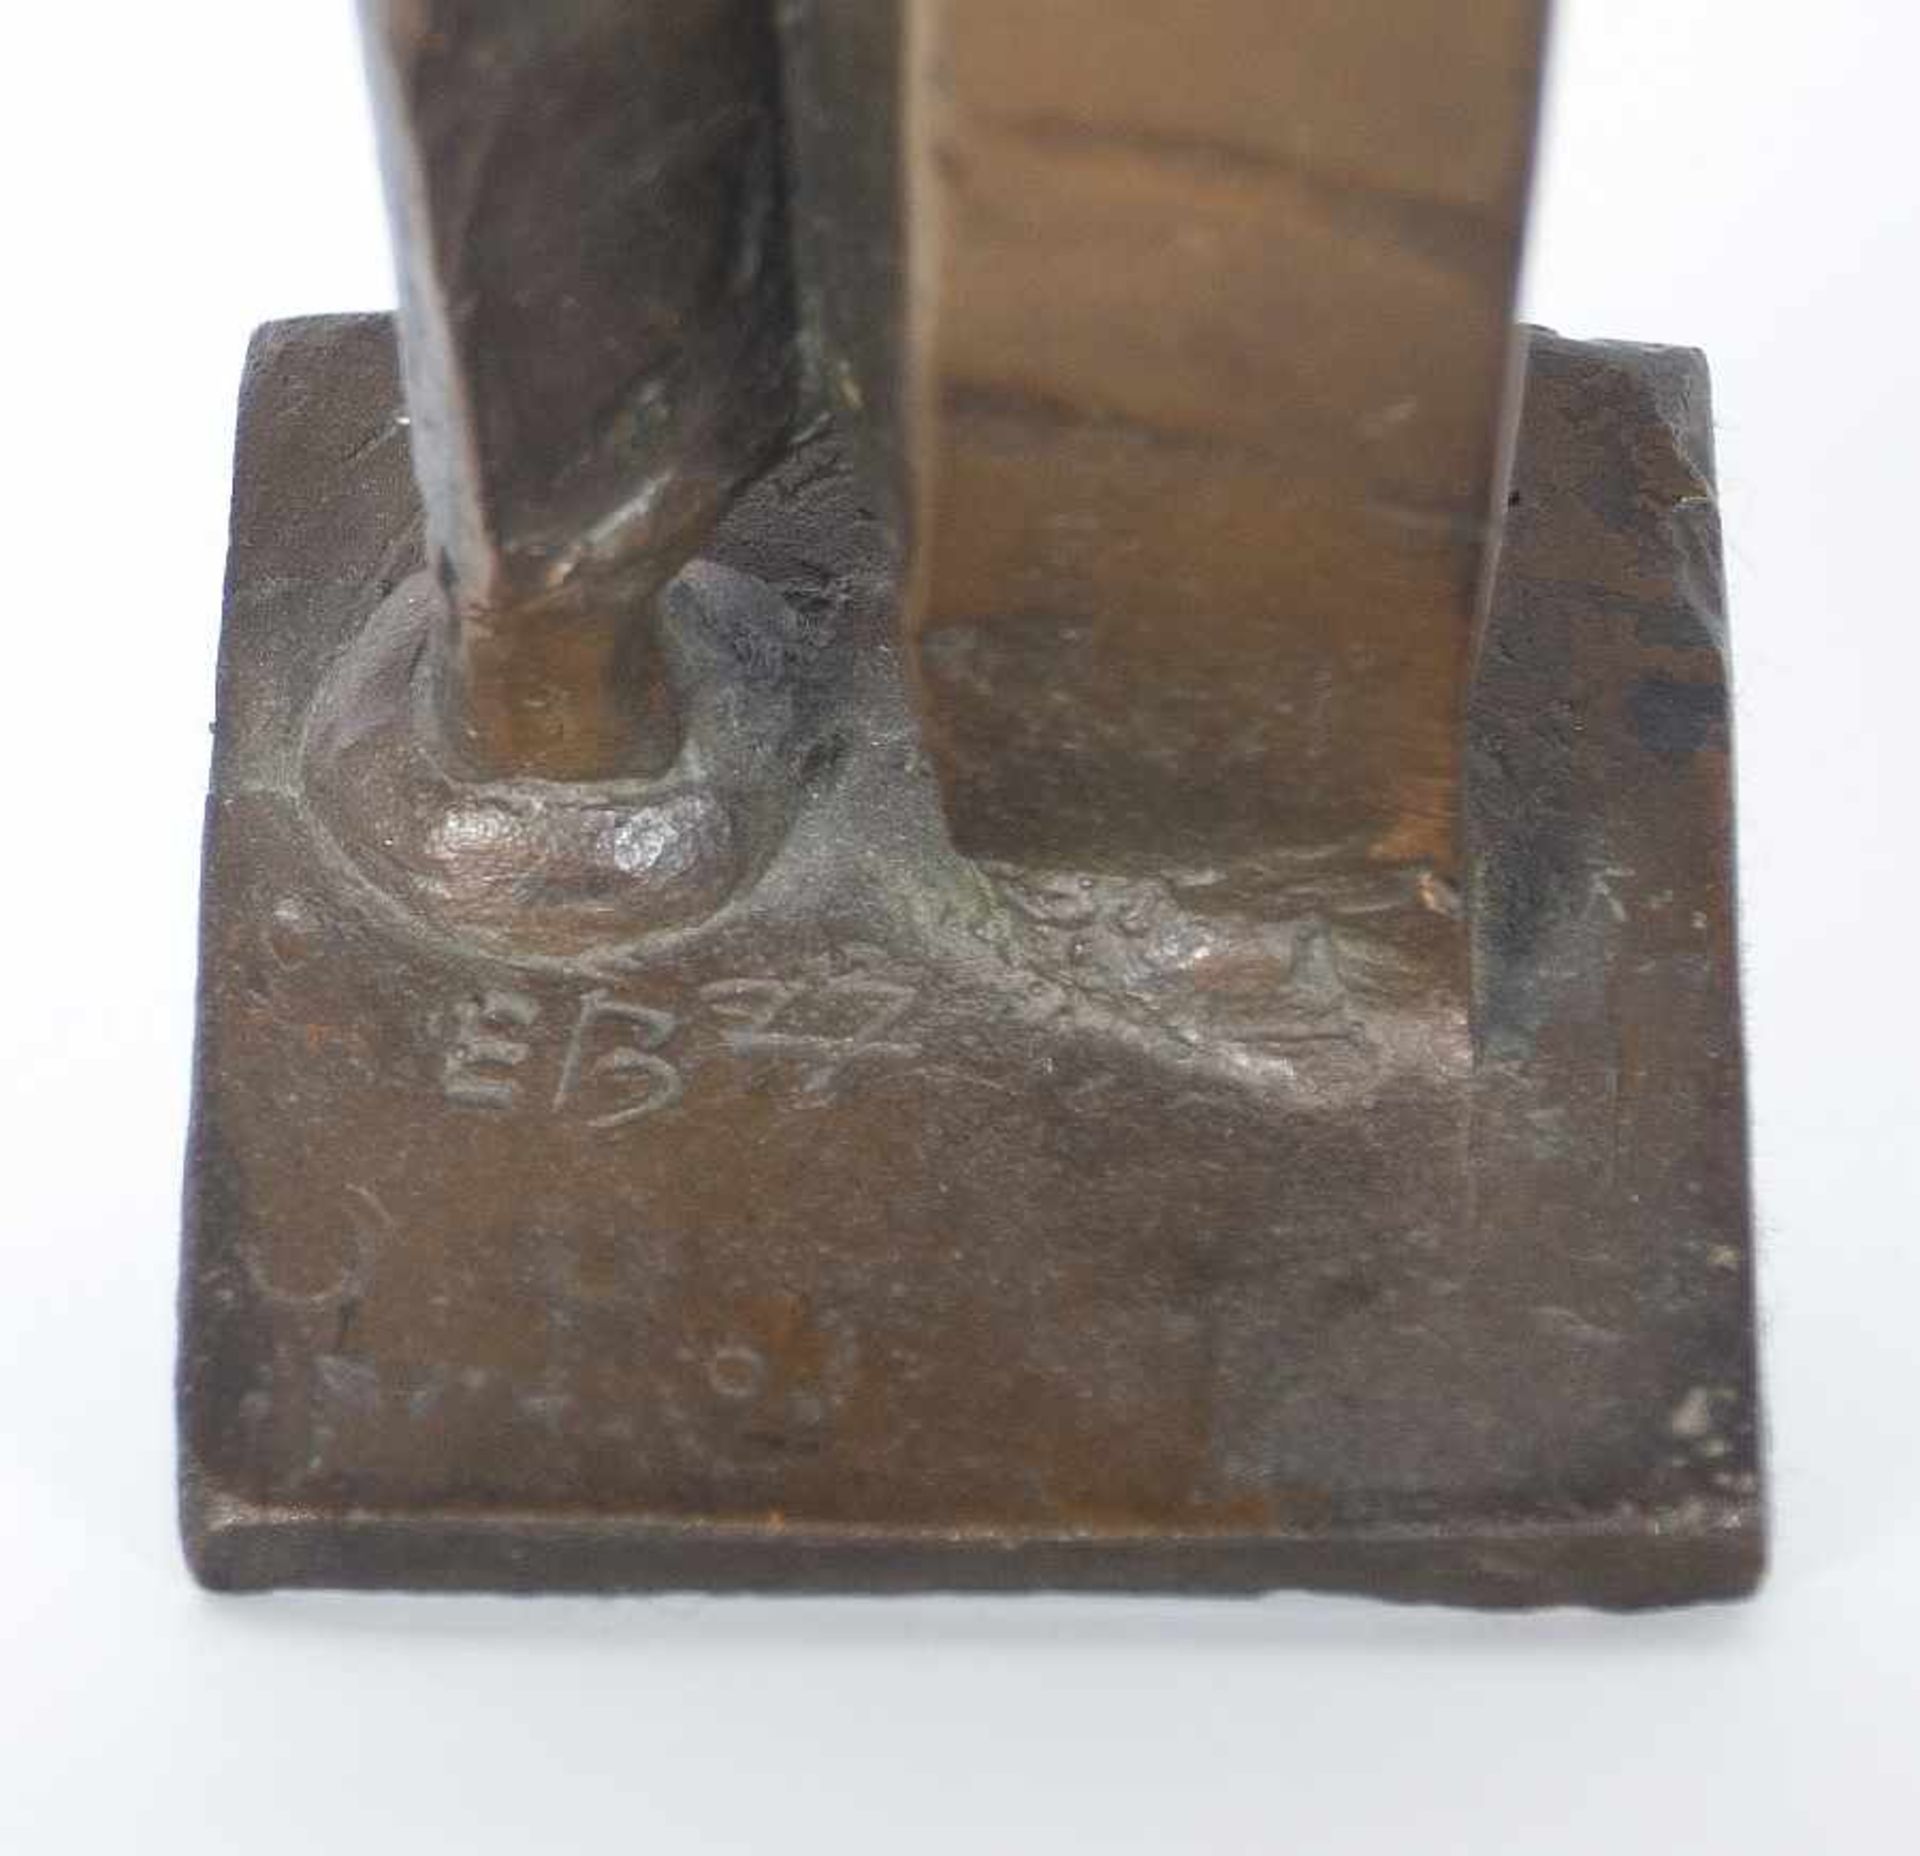 Bildhauer Mitte des 20. Jh. Stele mit filigranem Aufsatz Bronze; H 32,5 cm, B 17 cm; signiert und - Bild 2 aus 2